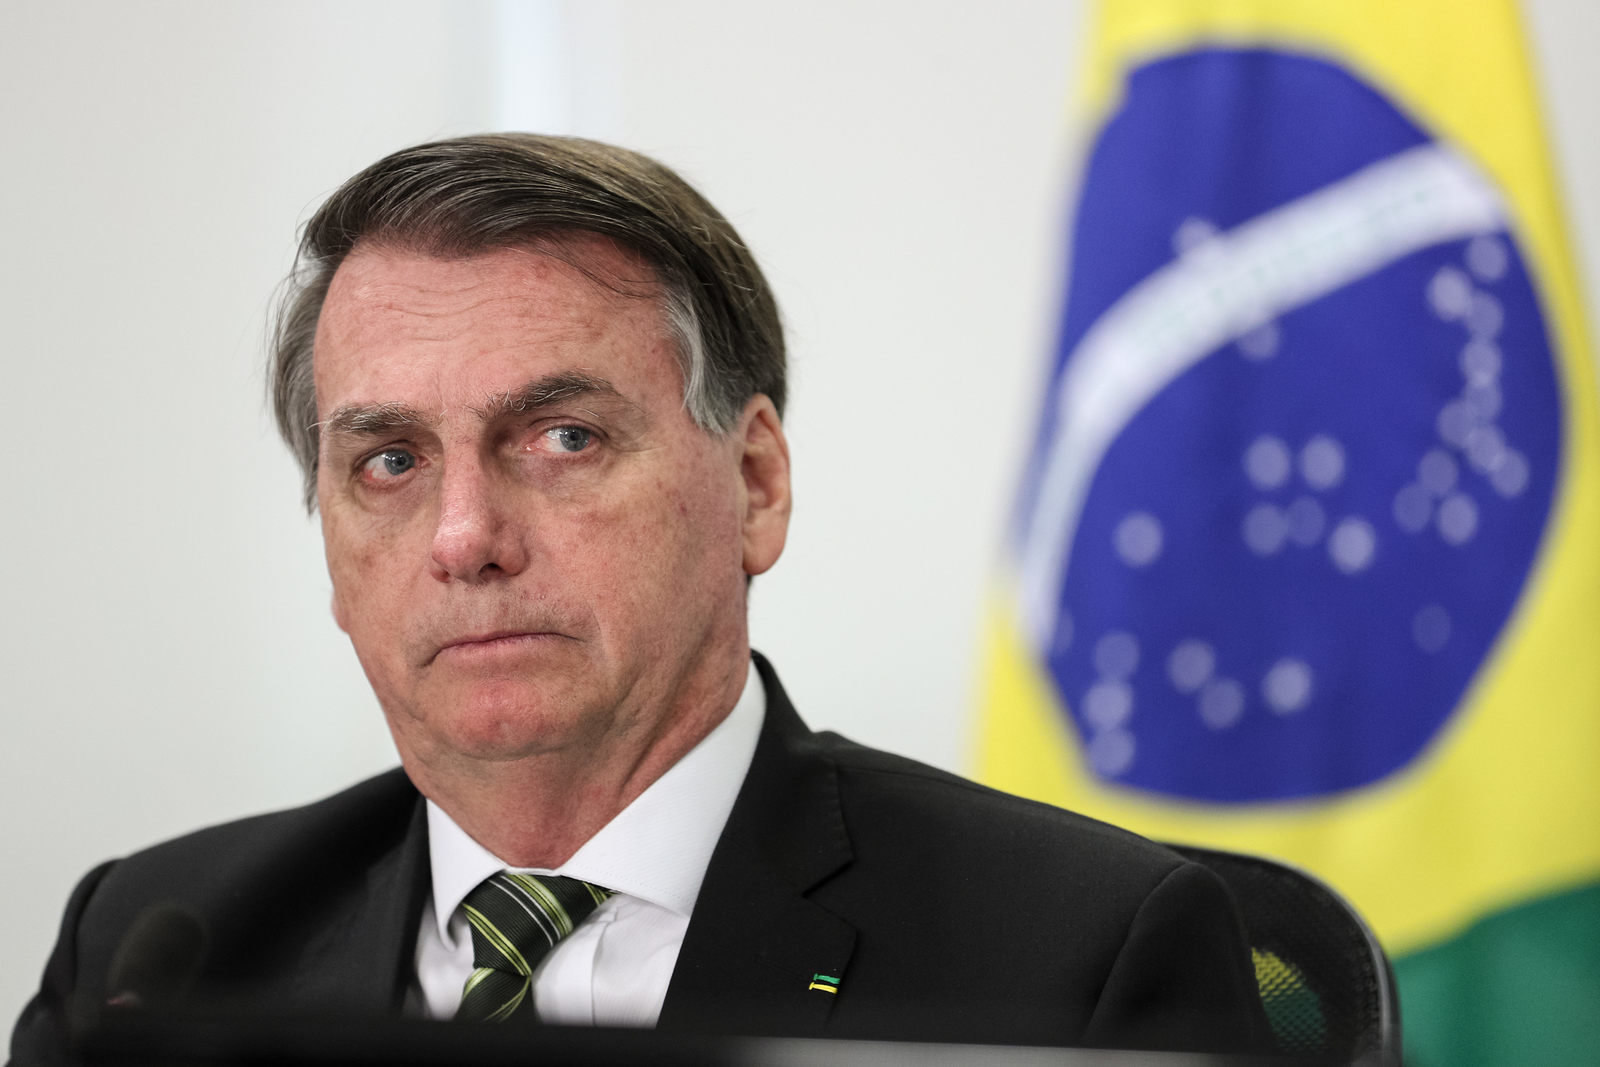 Na pandemia, Bolsonaro vai nomear reitores sem eleição nas universidades